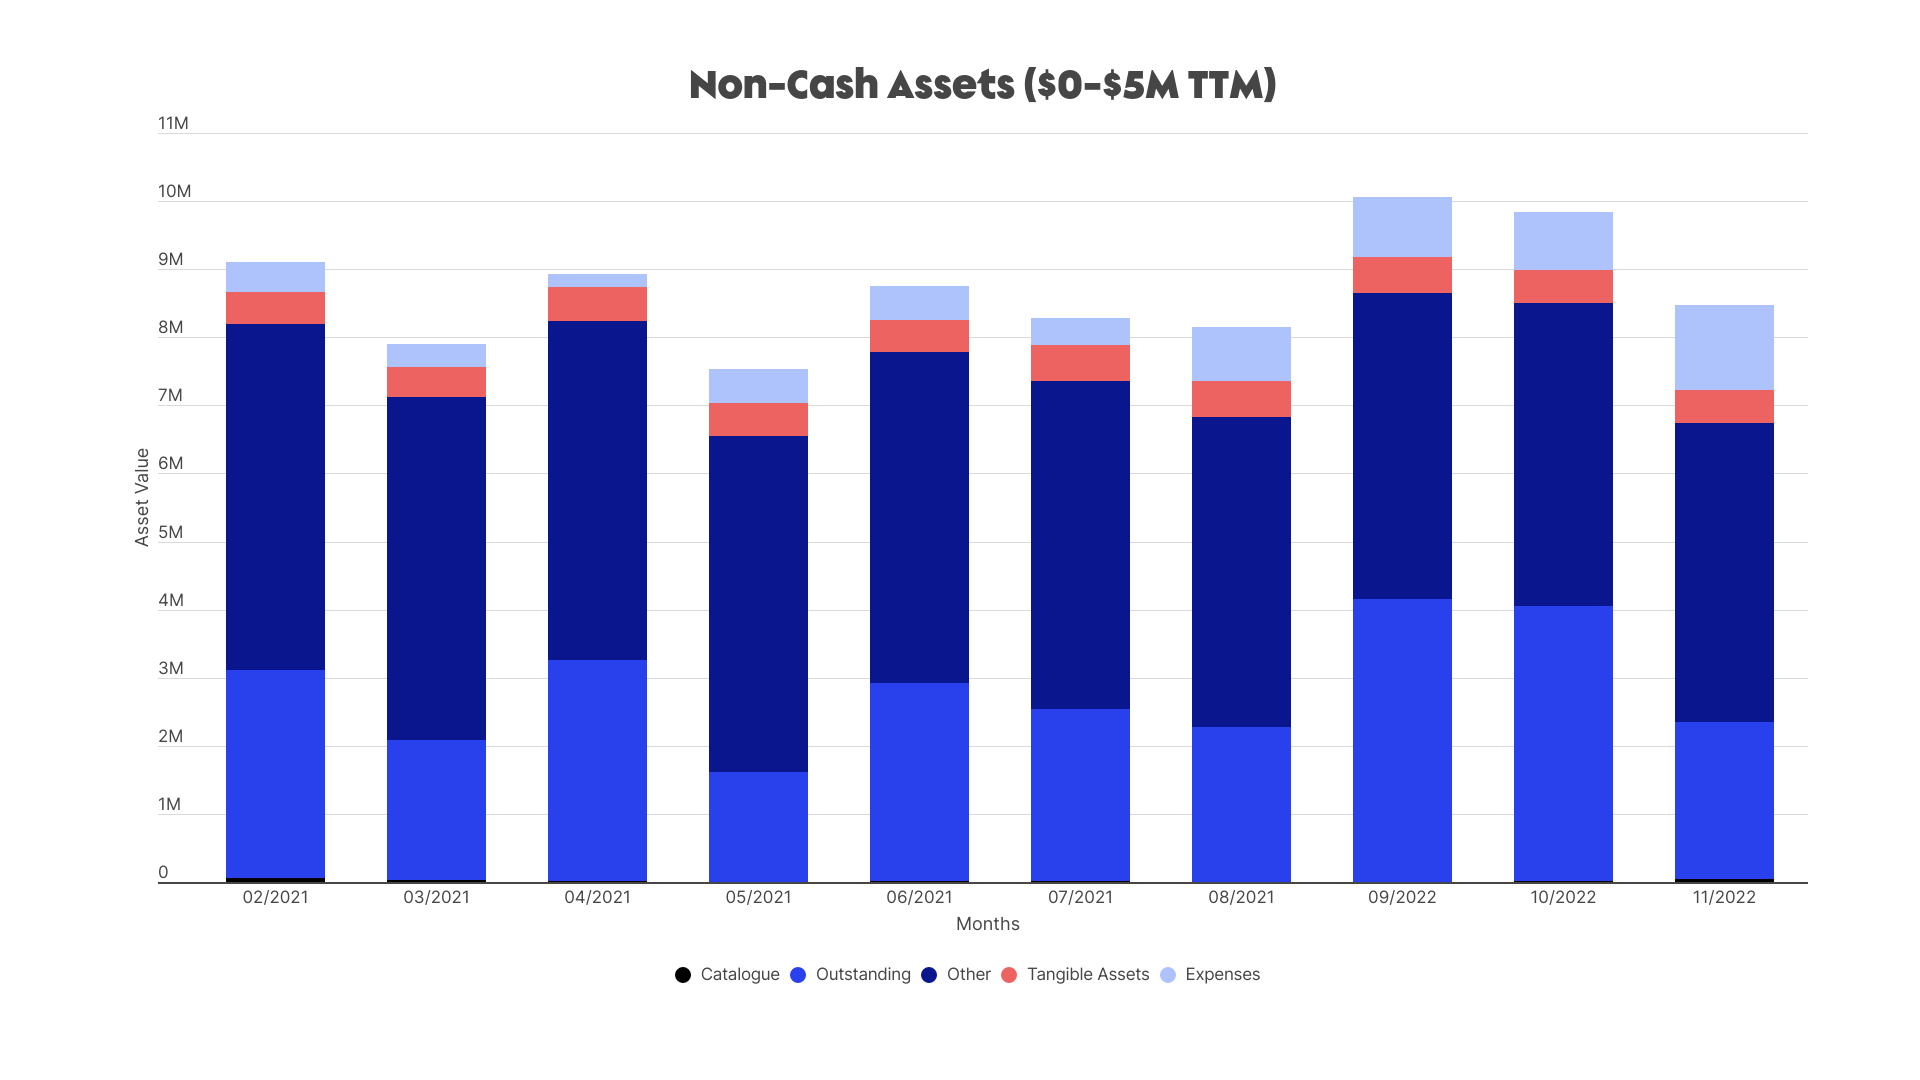 Non-cash assets, $0-$5M TTM